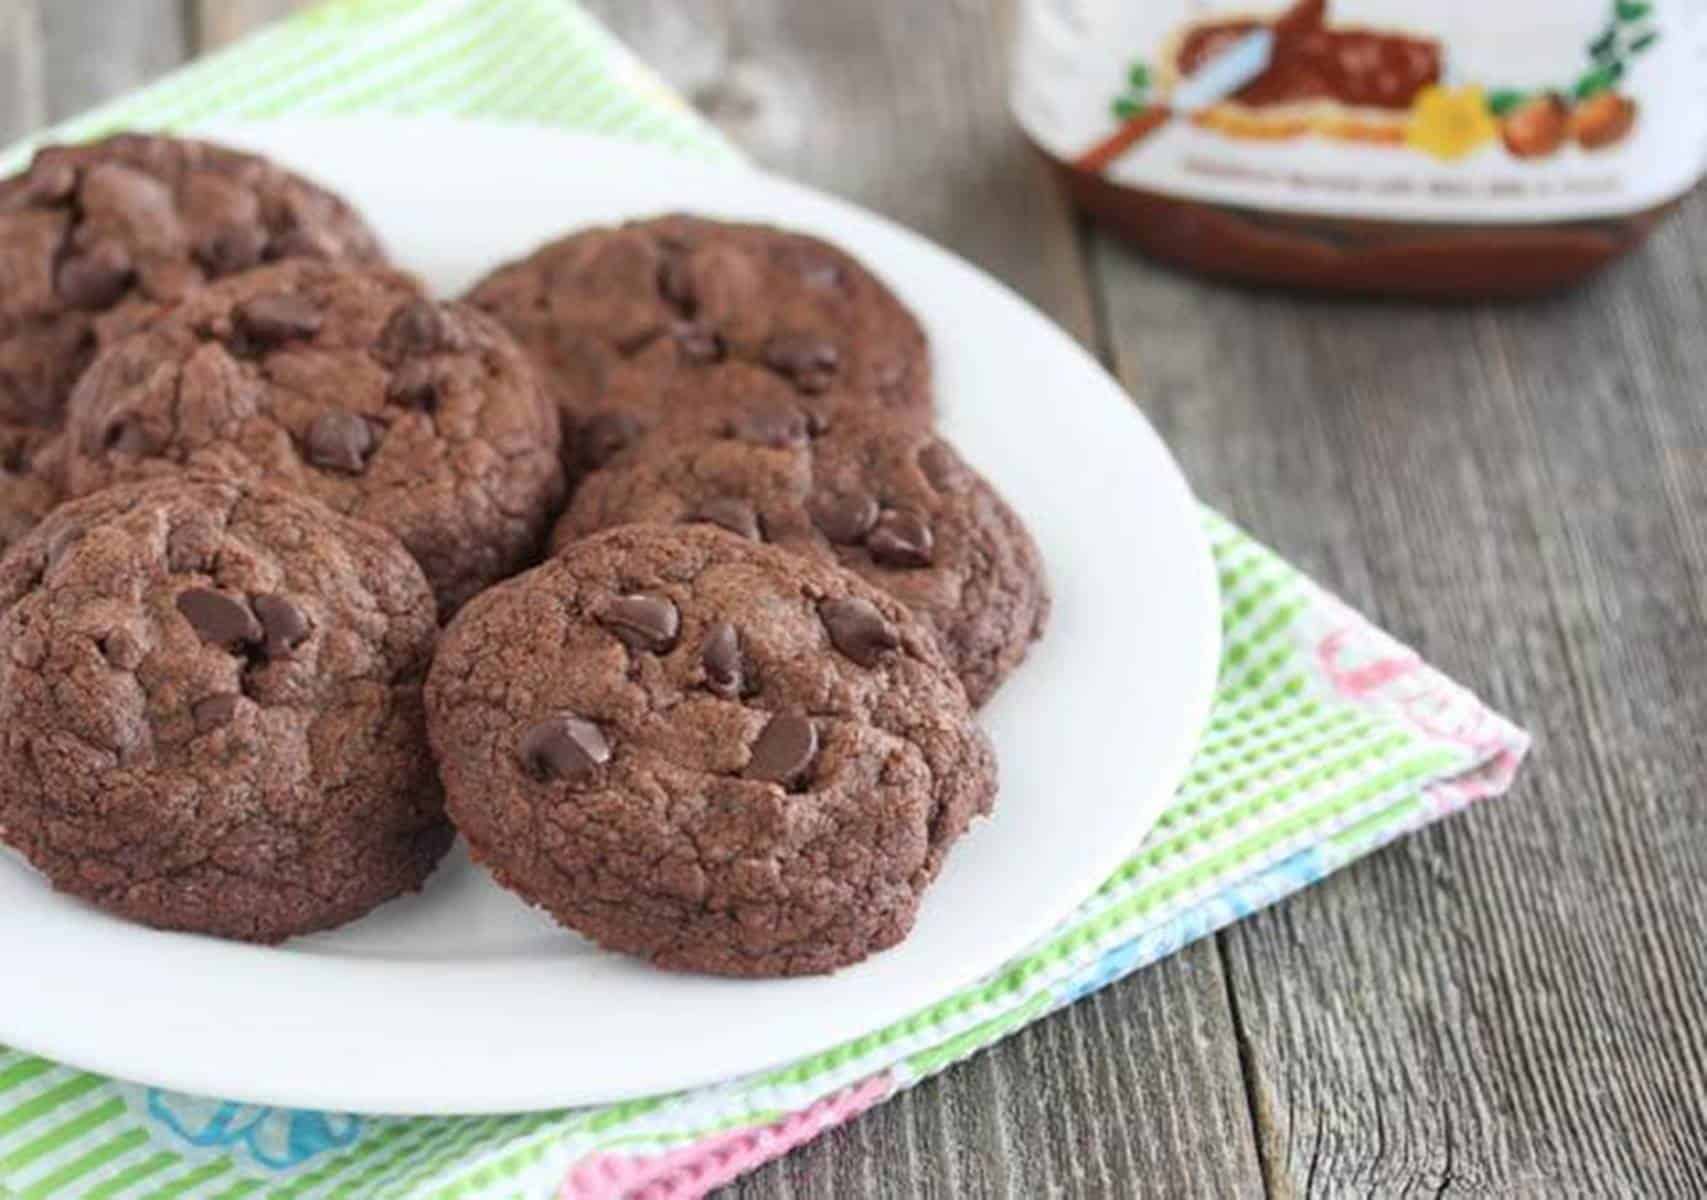 Descubra o incrível sabor desses cookies Nutella feitos em apenas em 5 minutos